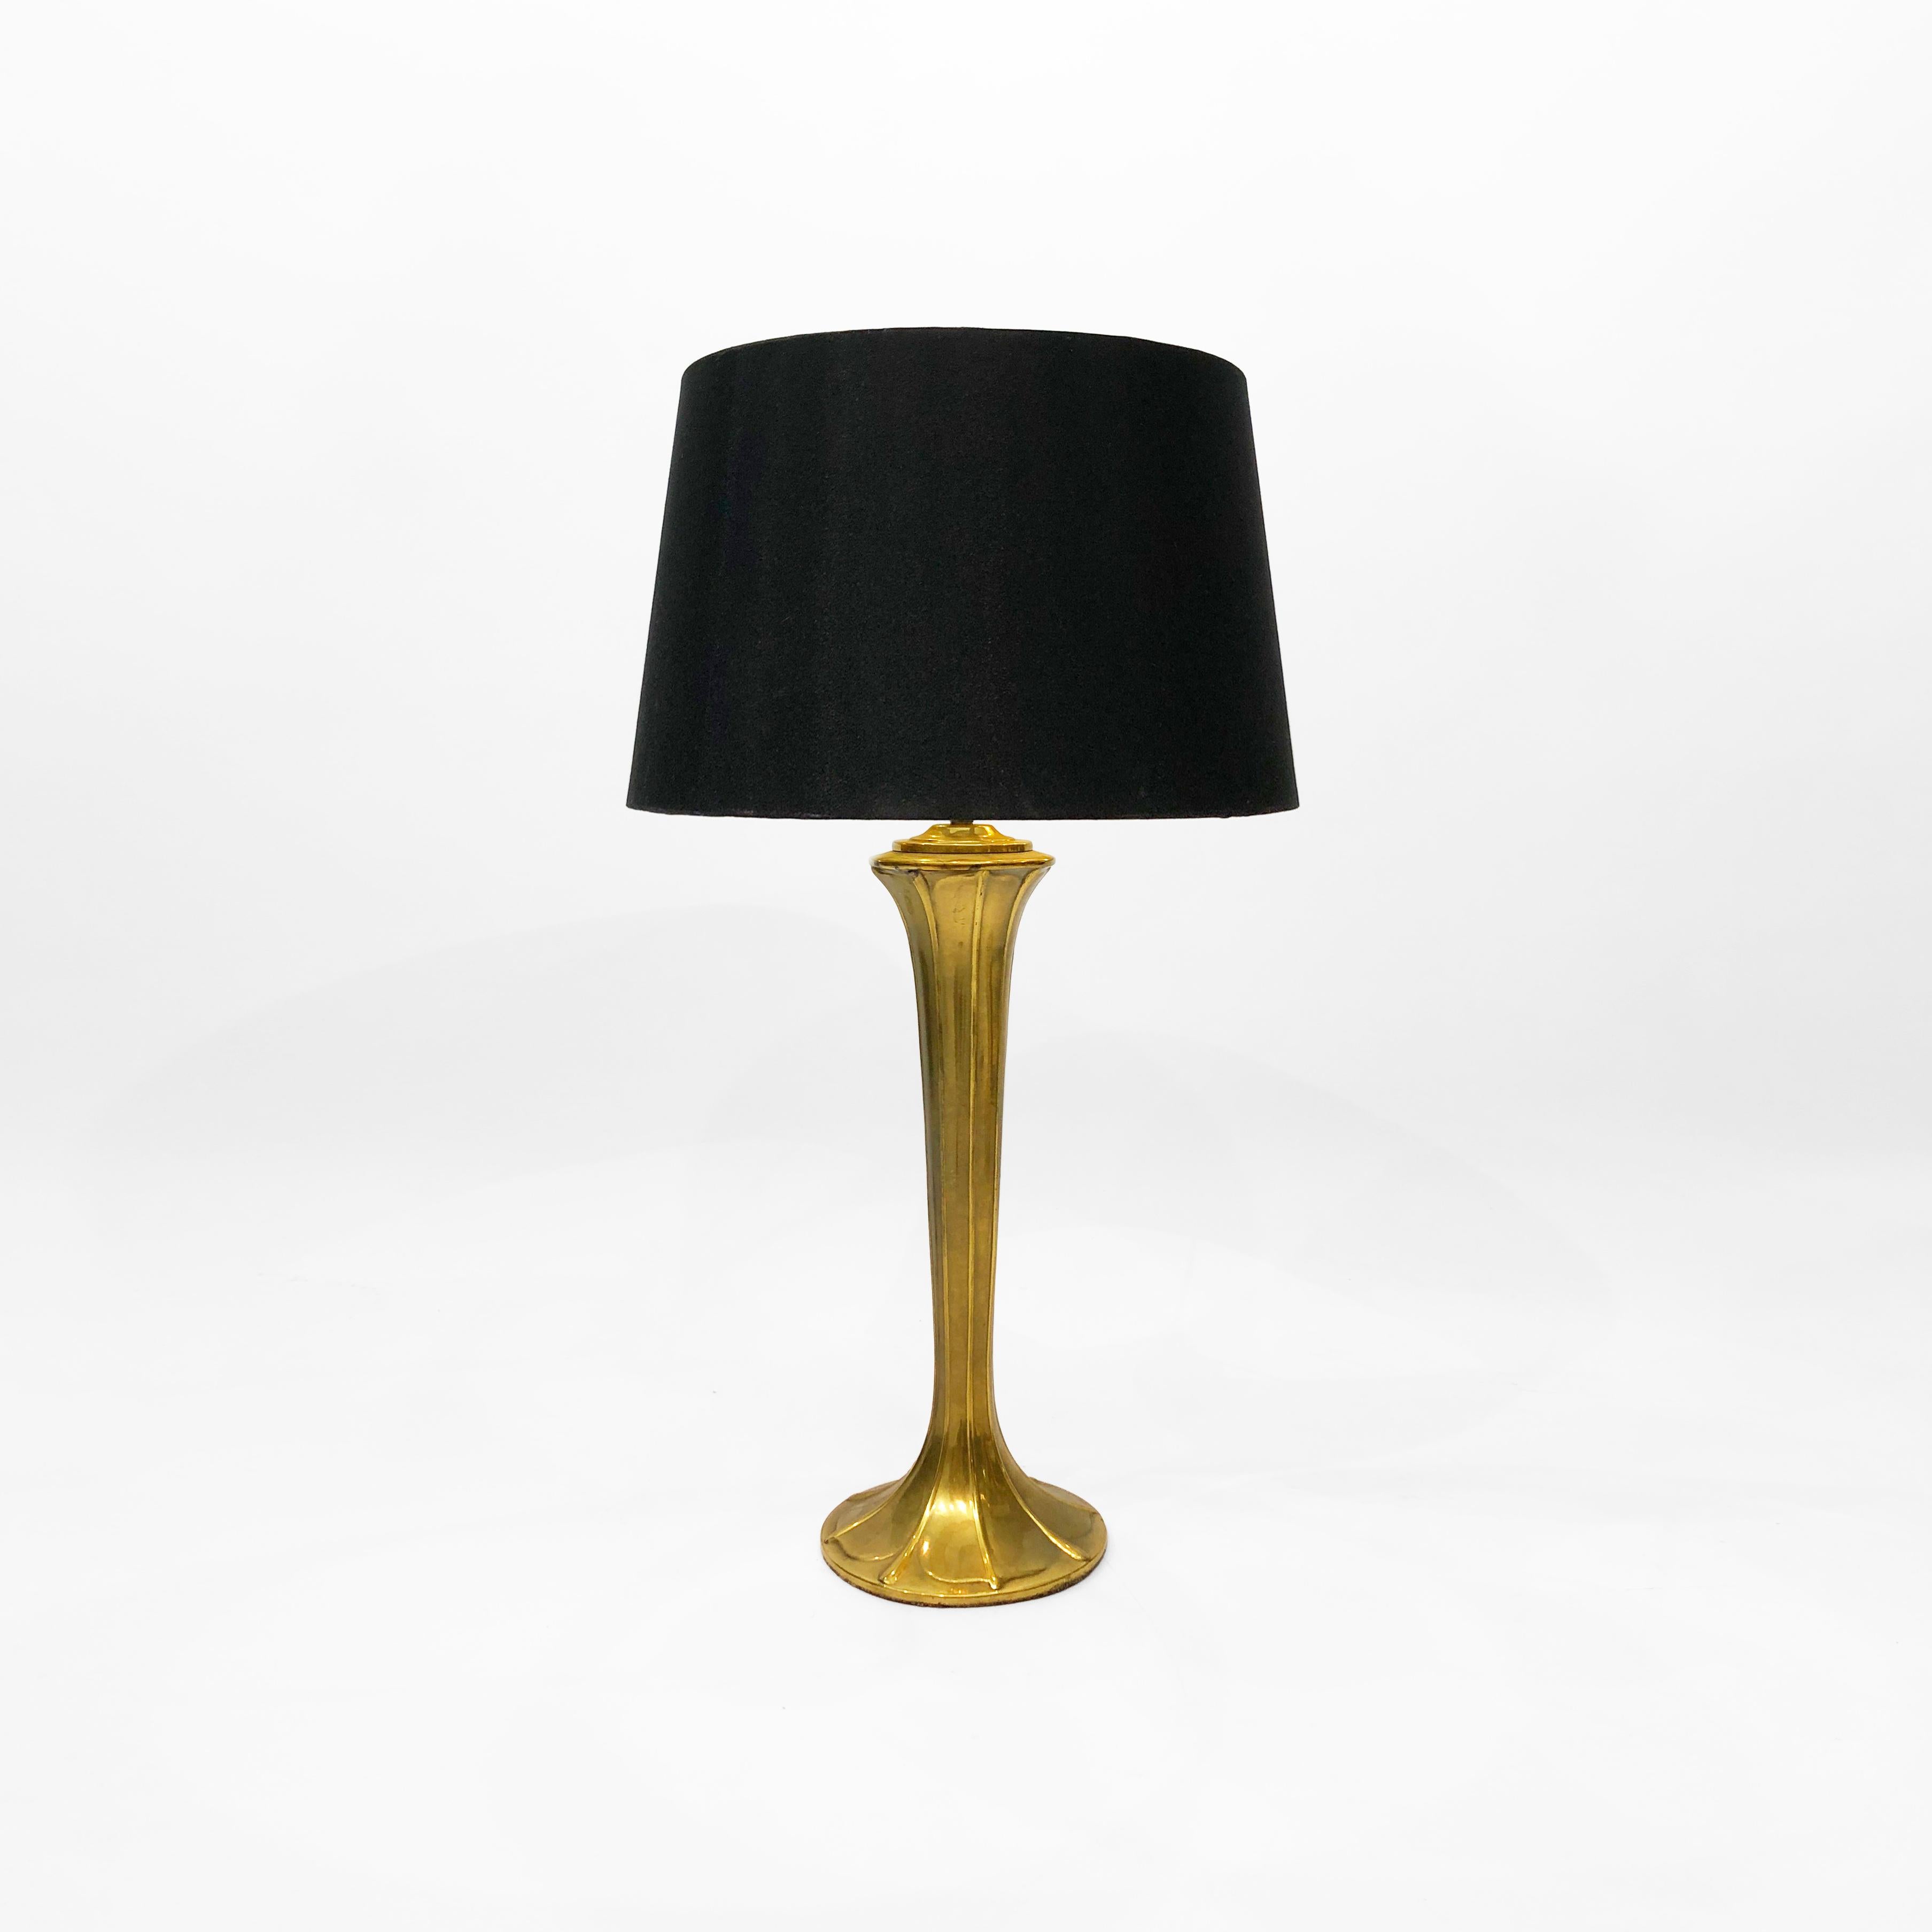 Lampe de table d'inspiration Art nouveau des années 1970, entièrement composée de laiton. La lampe organique, en forme de torche, s'incurve doucement vers l'intérieur à partir du bas, à la manière d'une feuille gaufrée, avant de s'élargir à nouveau